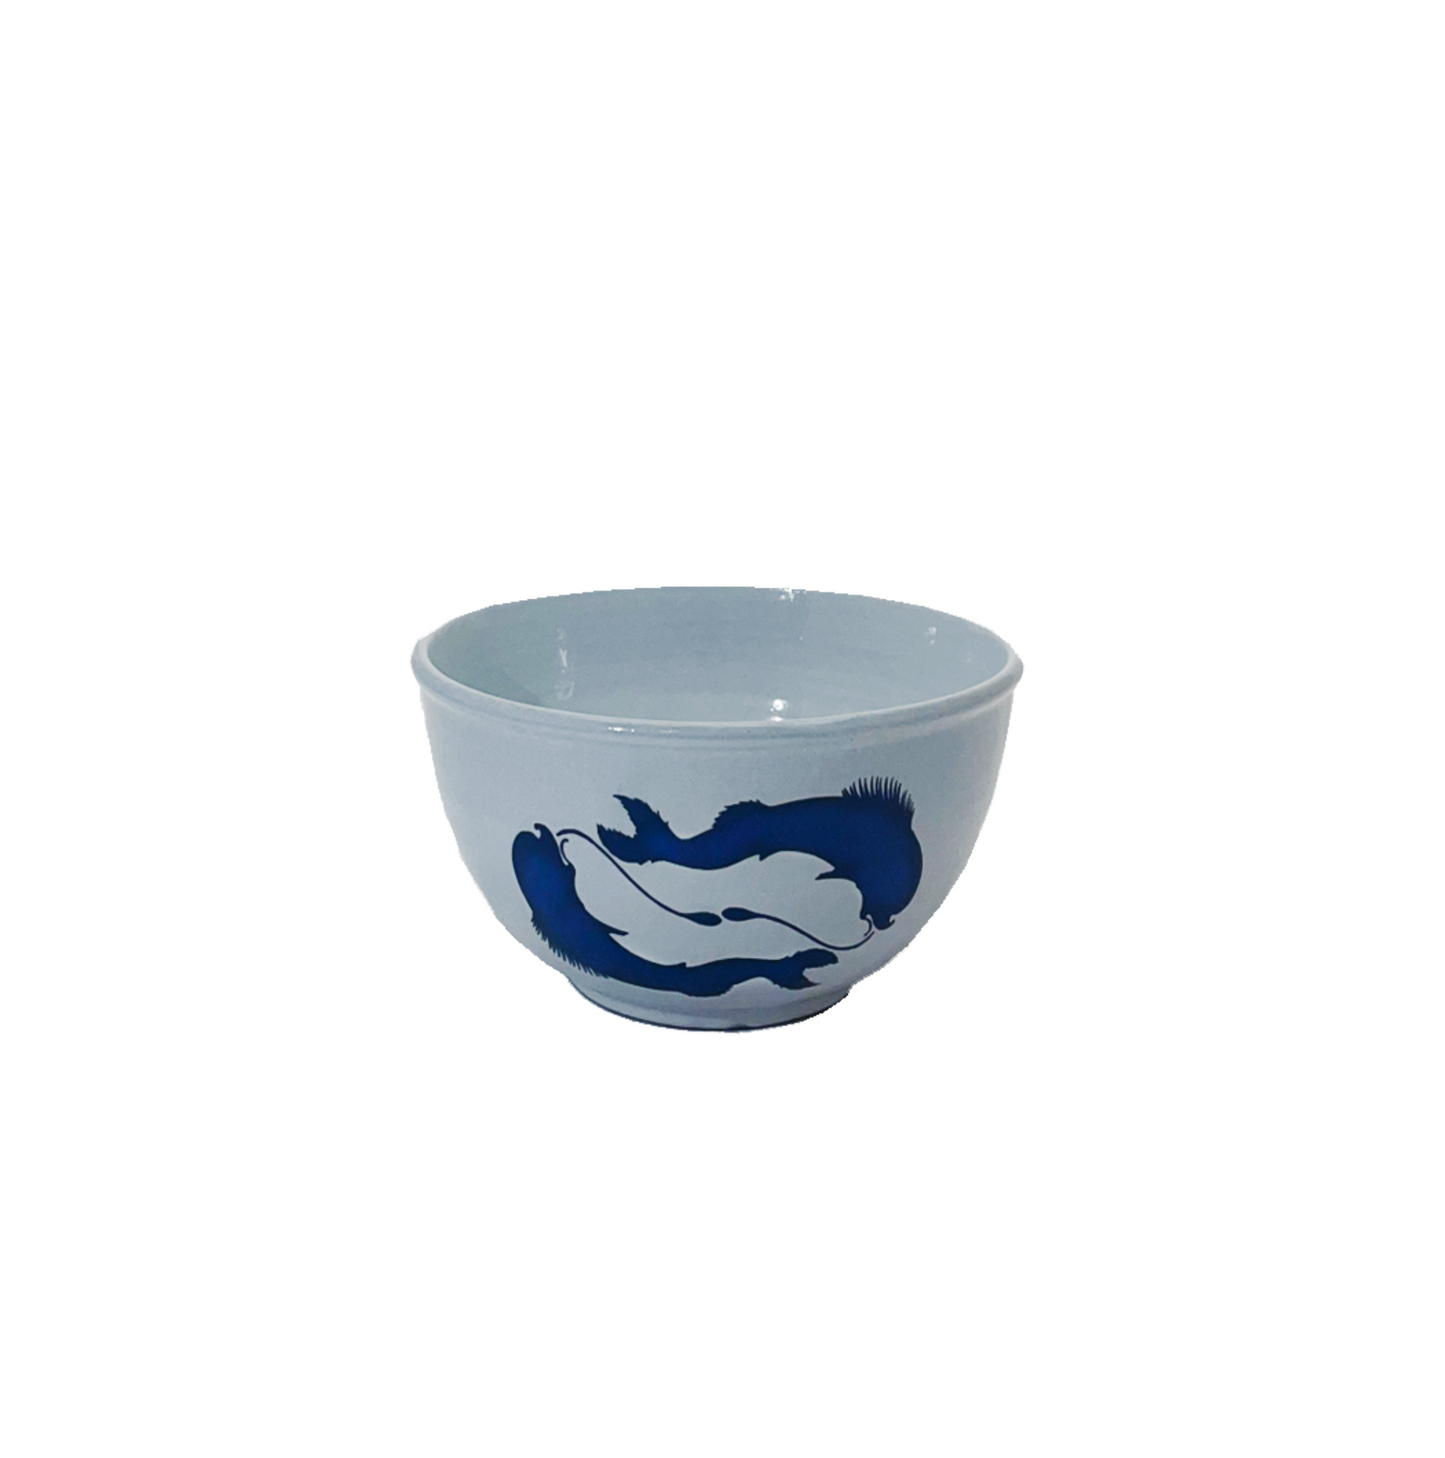 Pisces ceramic bowl